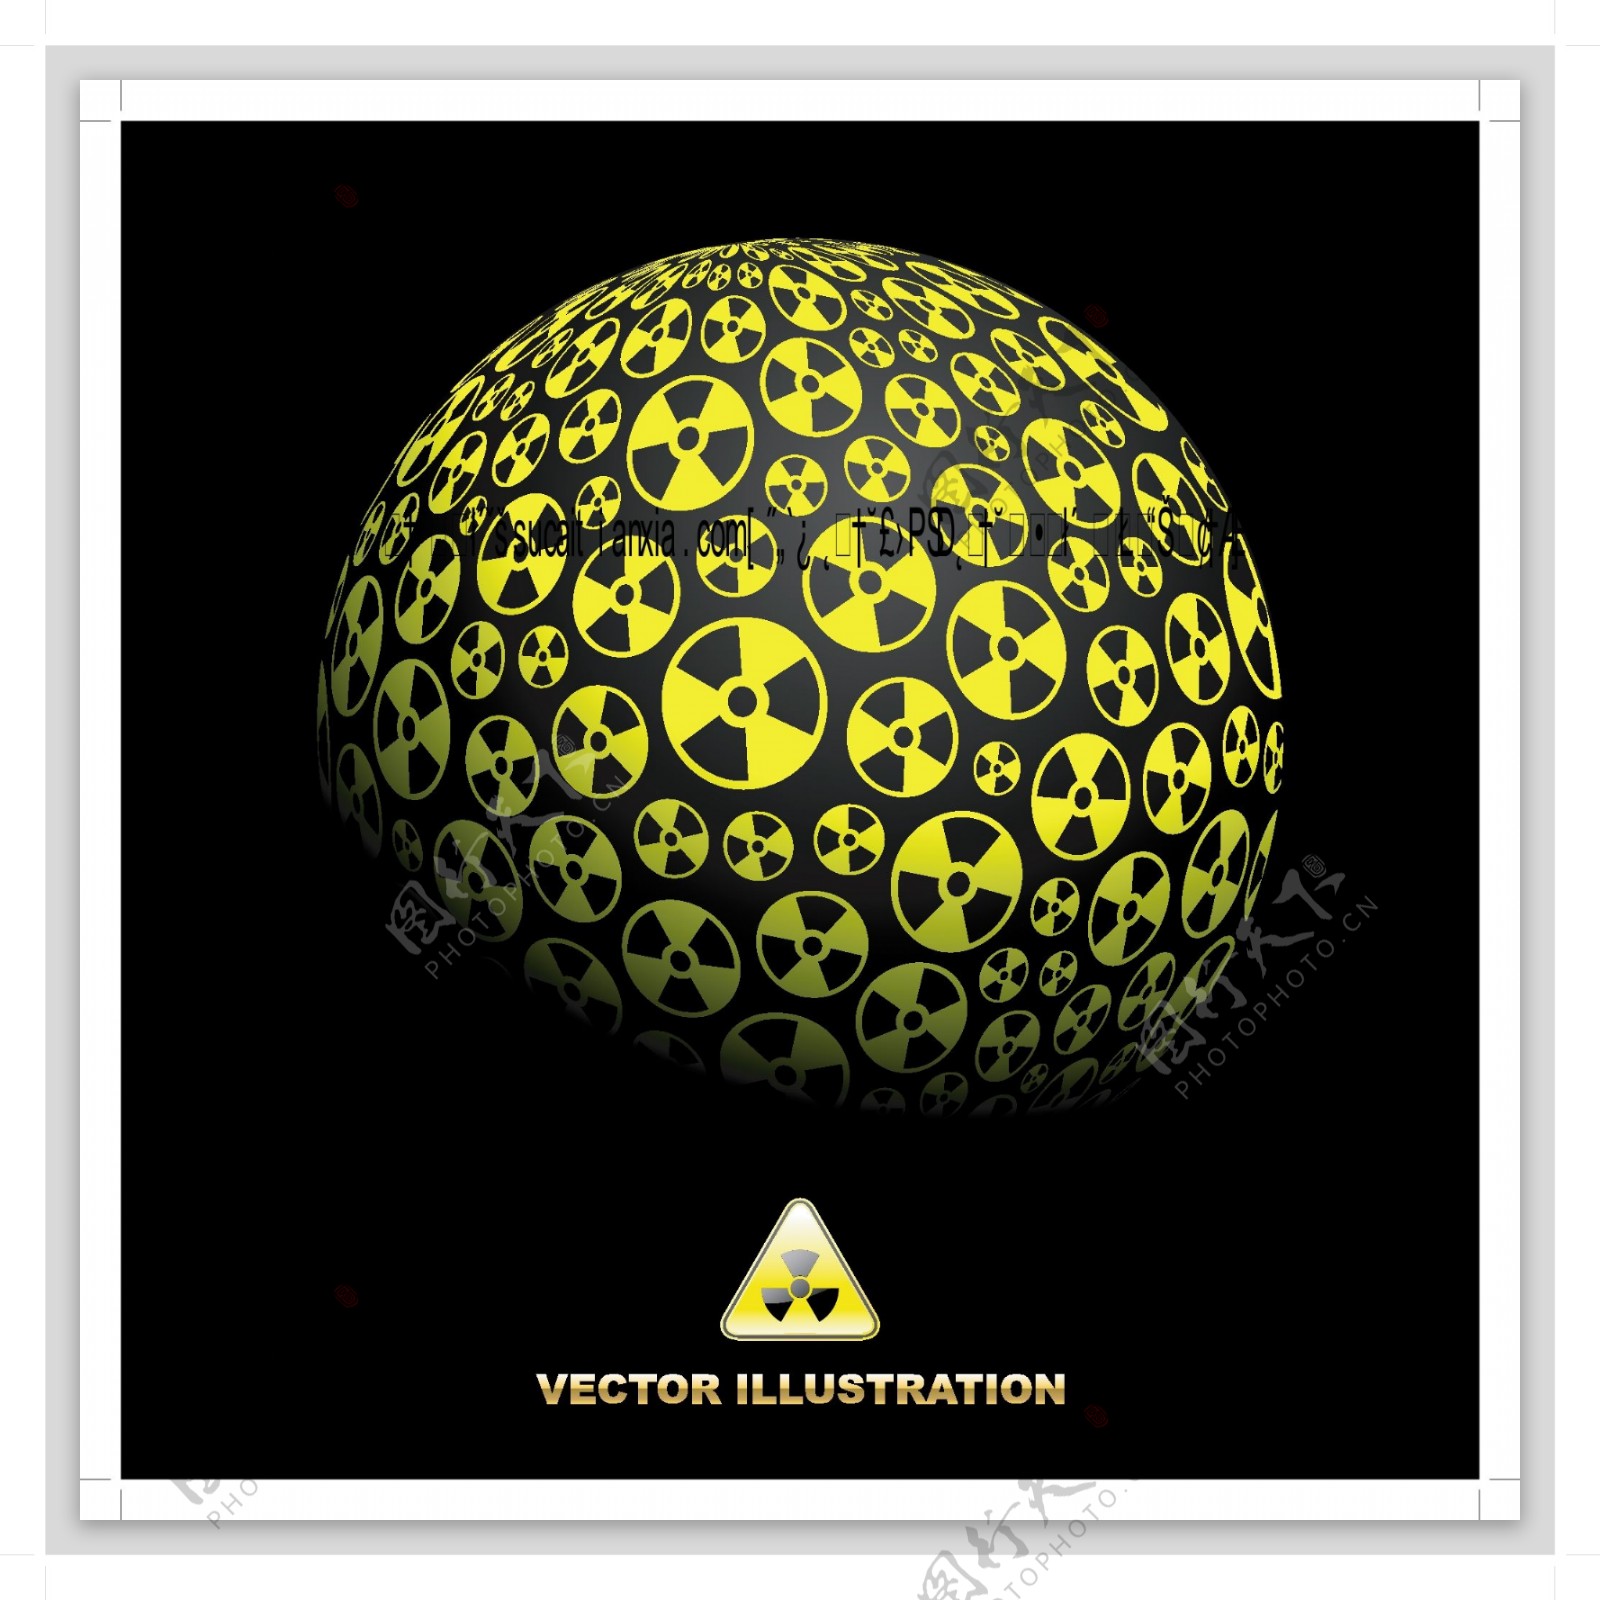 球形核辐射标志背景矢量素材